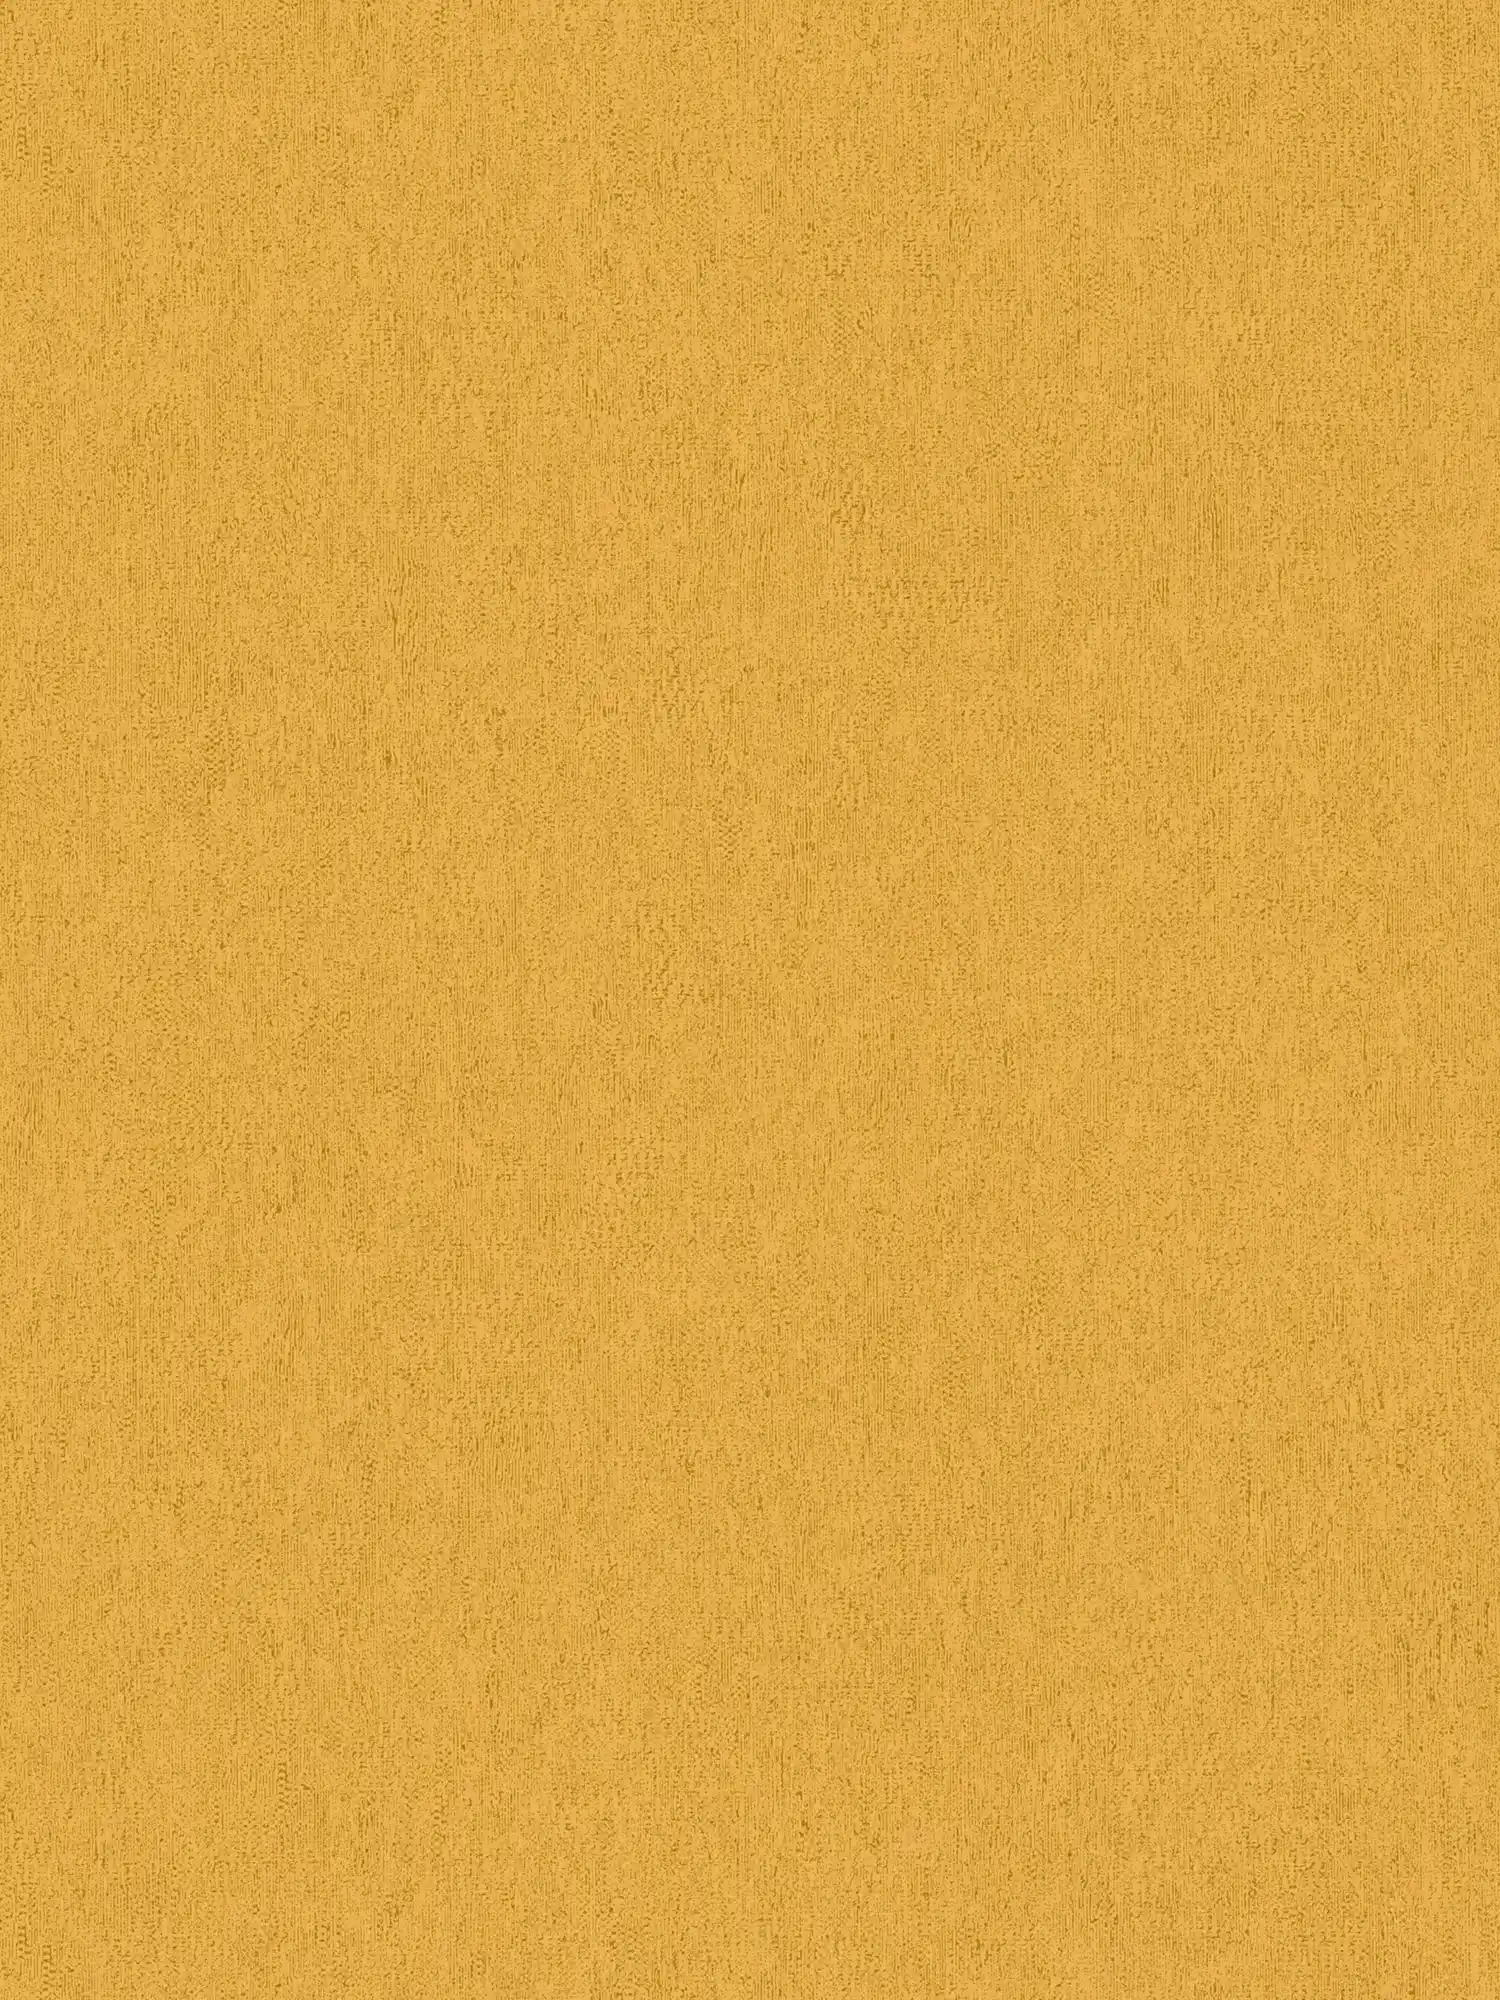 Papier peint uni avec structure aspect mat & lisse - jaune
